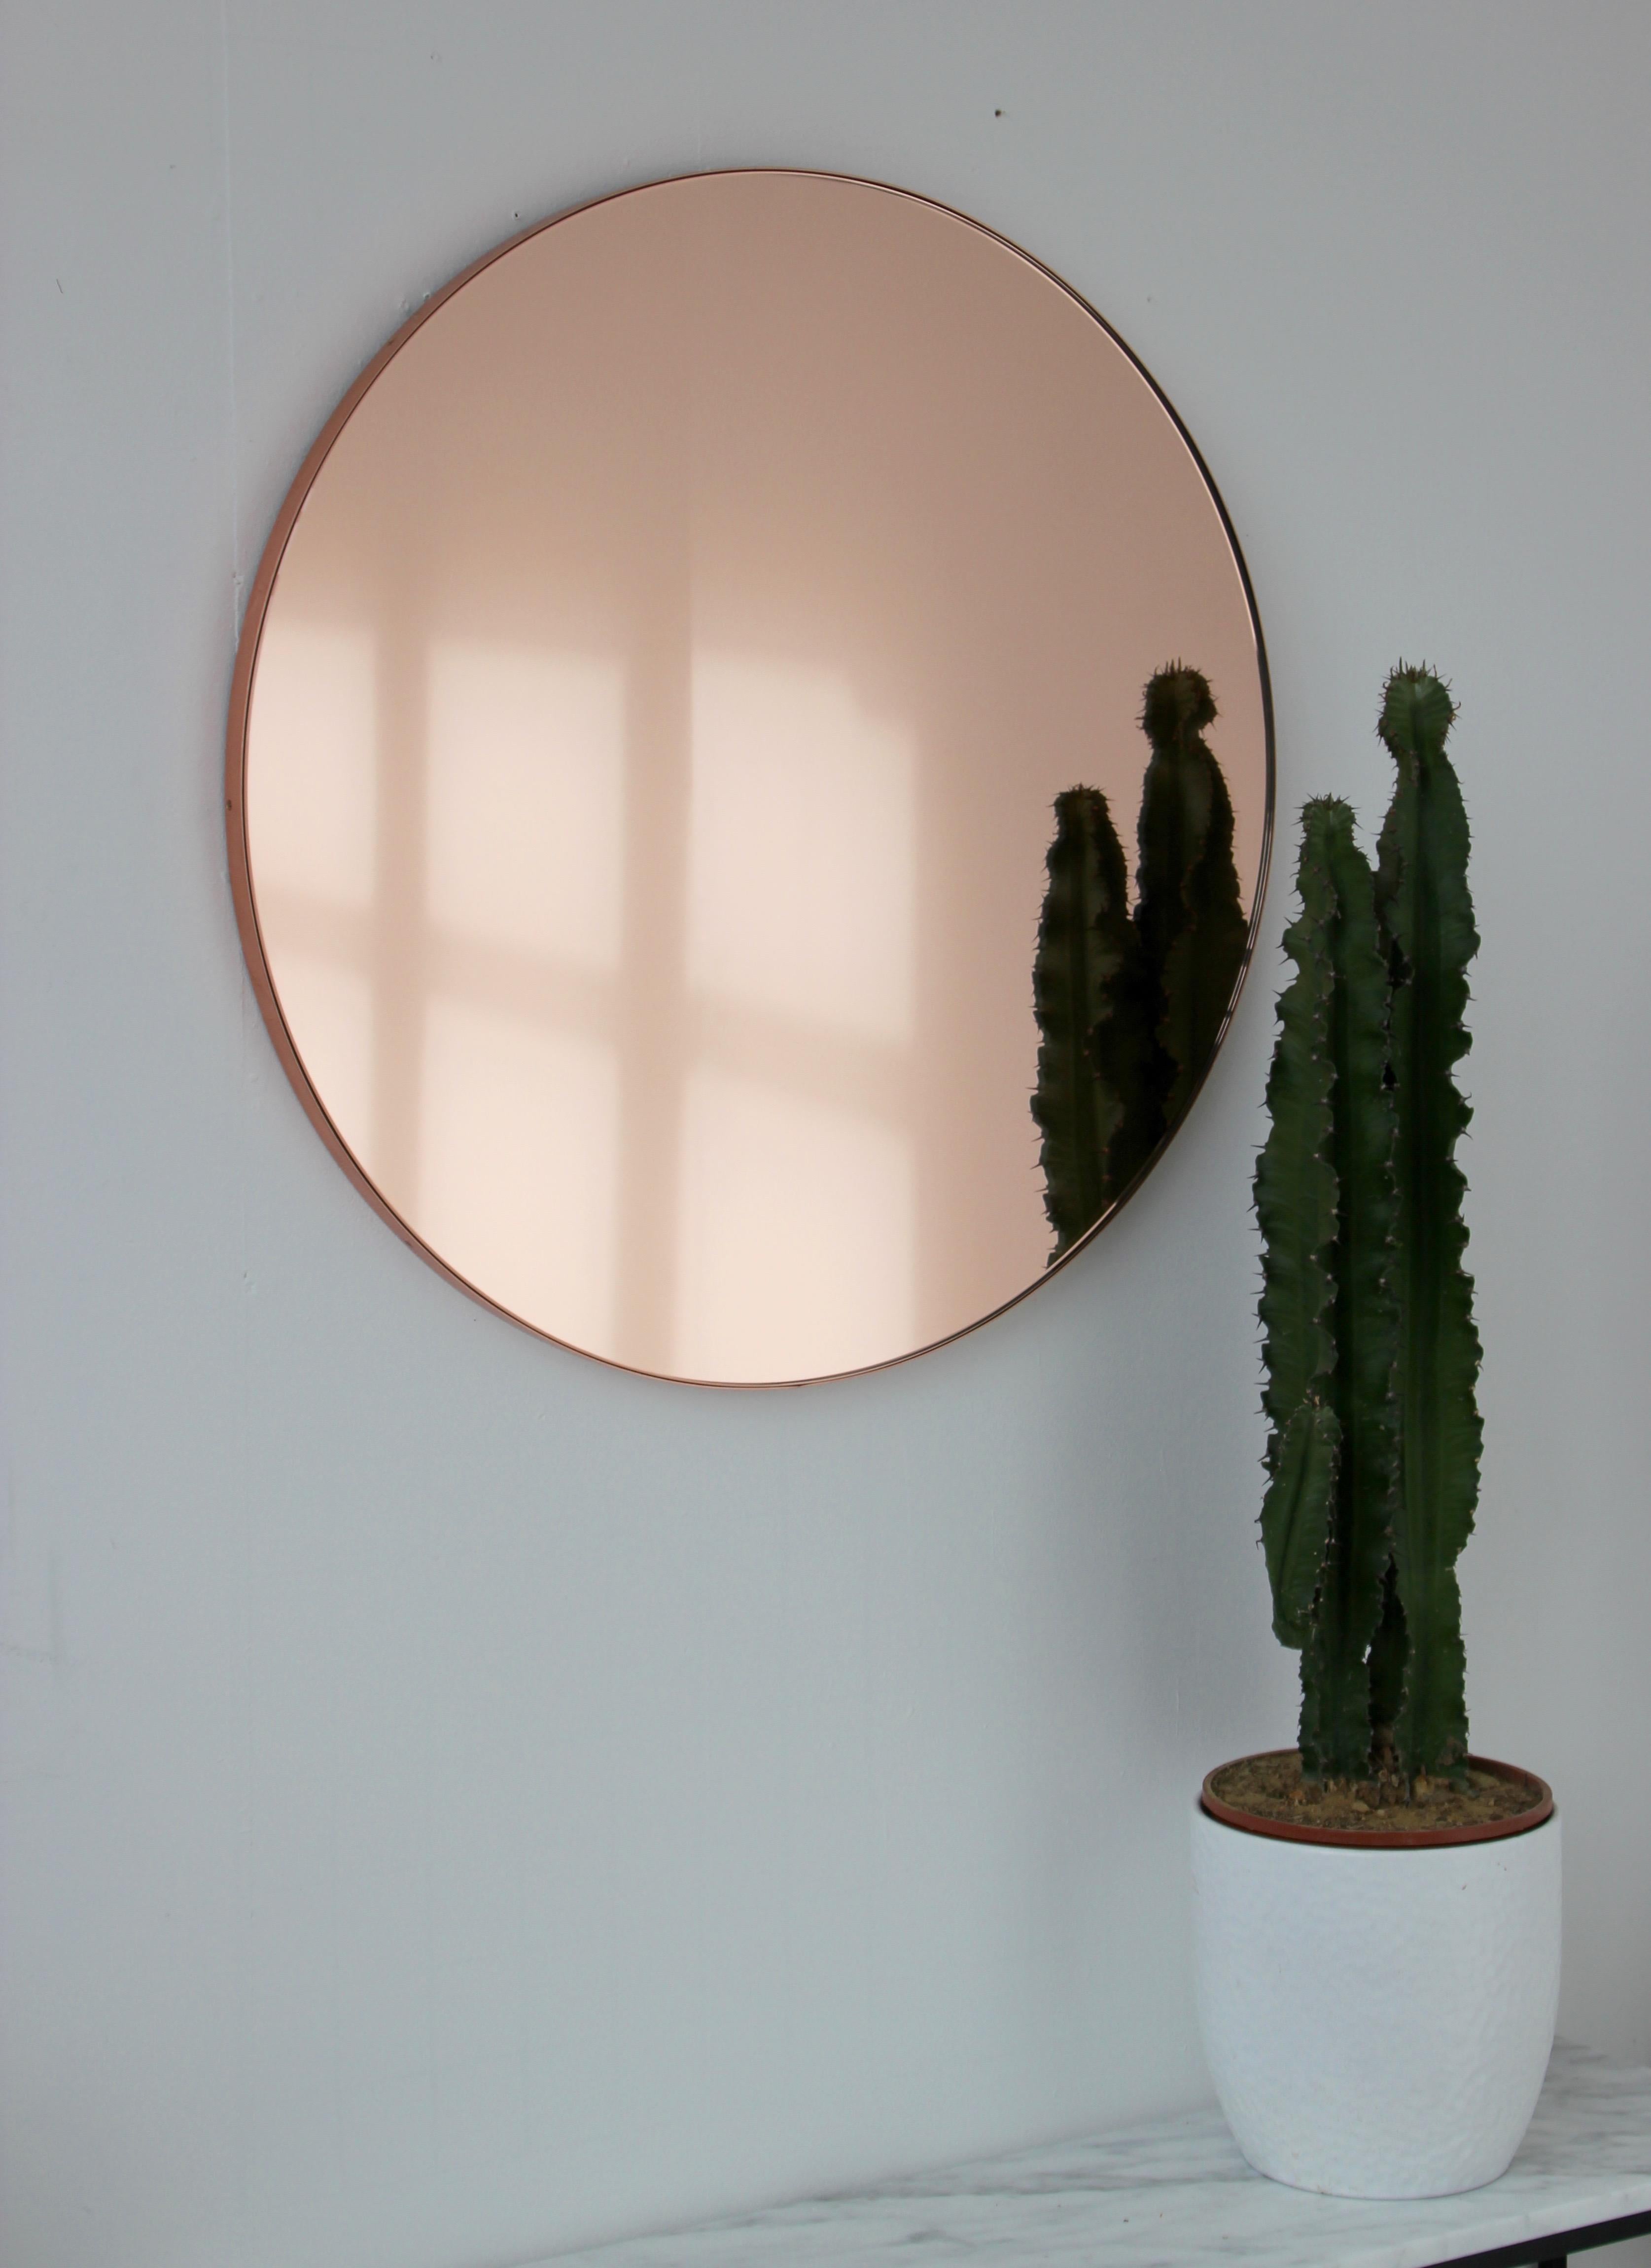 Zeitgenössischer runder Spiegel in Pfirsich- und Roségoldtönen mit einem Rahmen aus gebürstetem Kupfer. Die Details und die Verarbeitung, einschließlich der sichtbaren verkupferten Schrauben, unterstreichen das handwerkliche Können und die Qualität